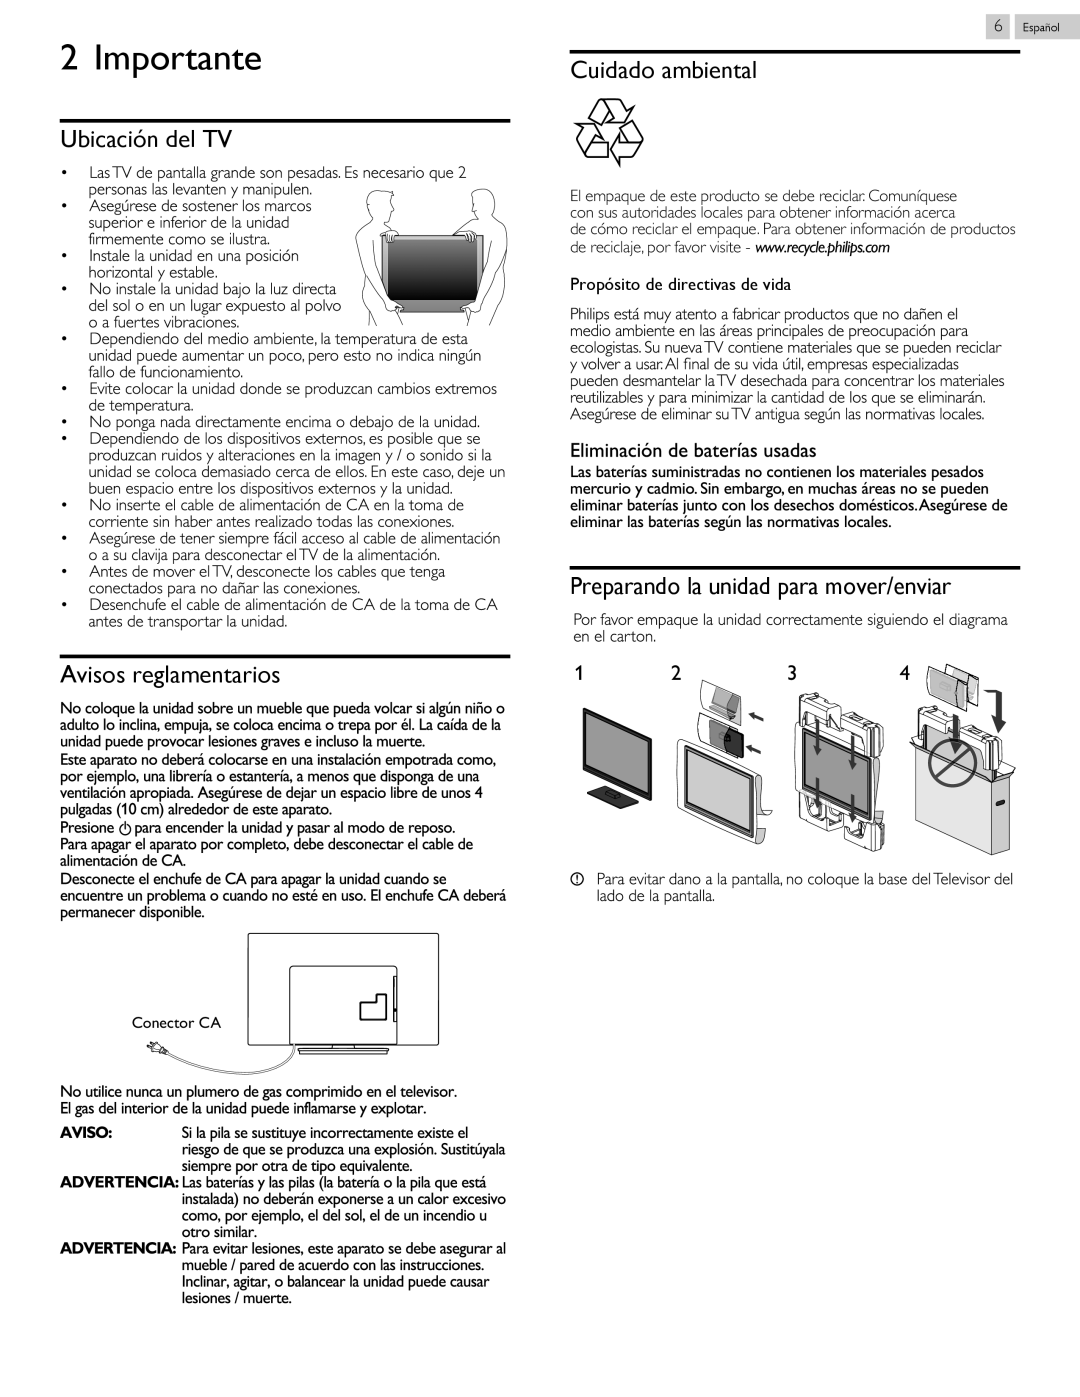 Philips 40PFL4709 user manual Importante, Ubicación del TV Avisos reglamentarios, Cuidado ambiental 